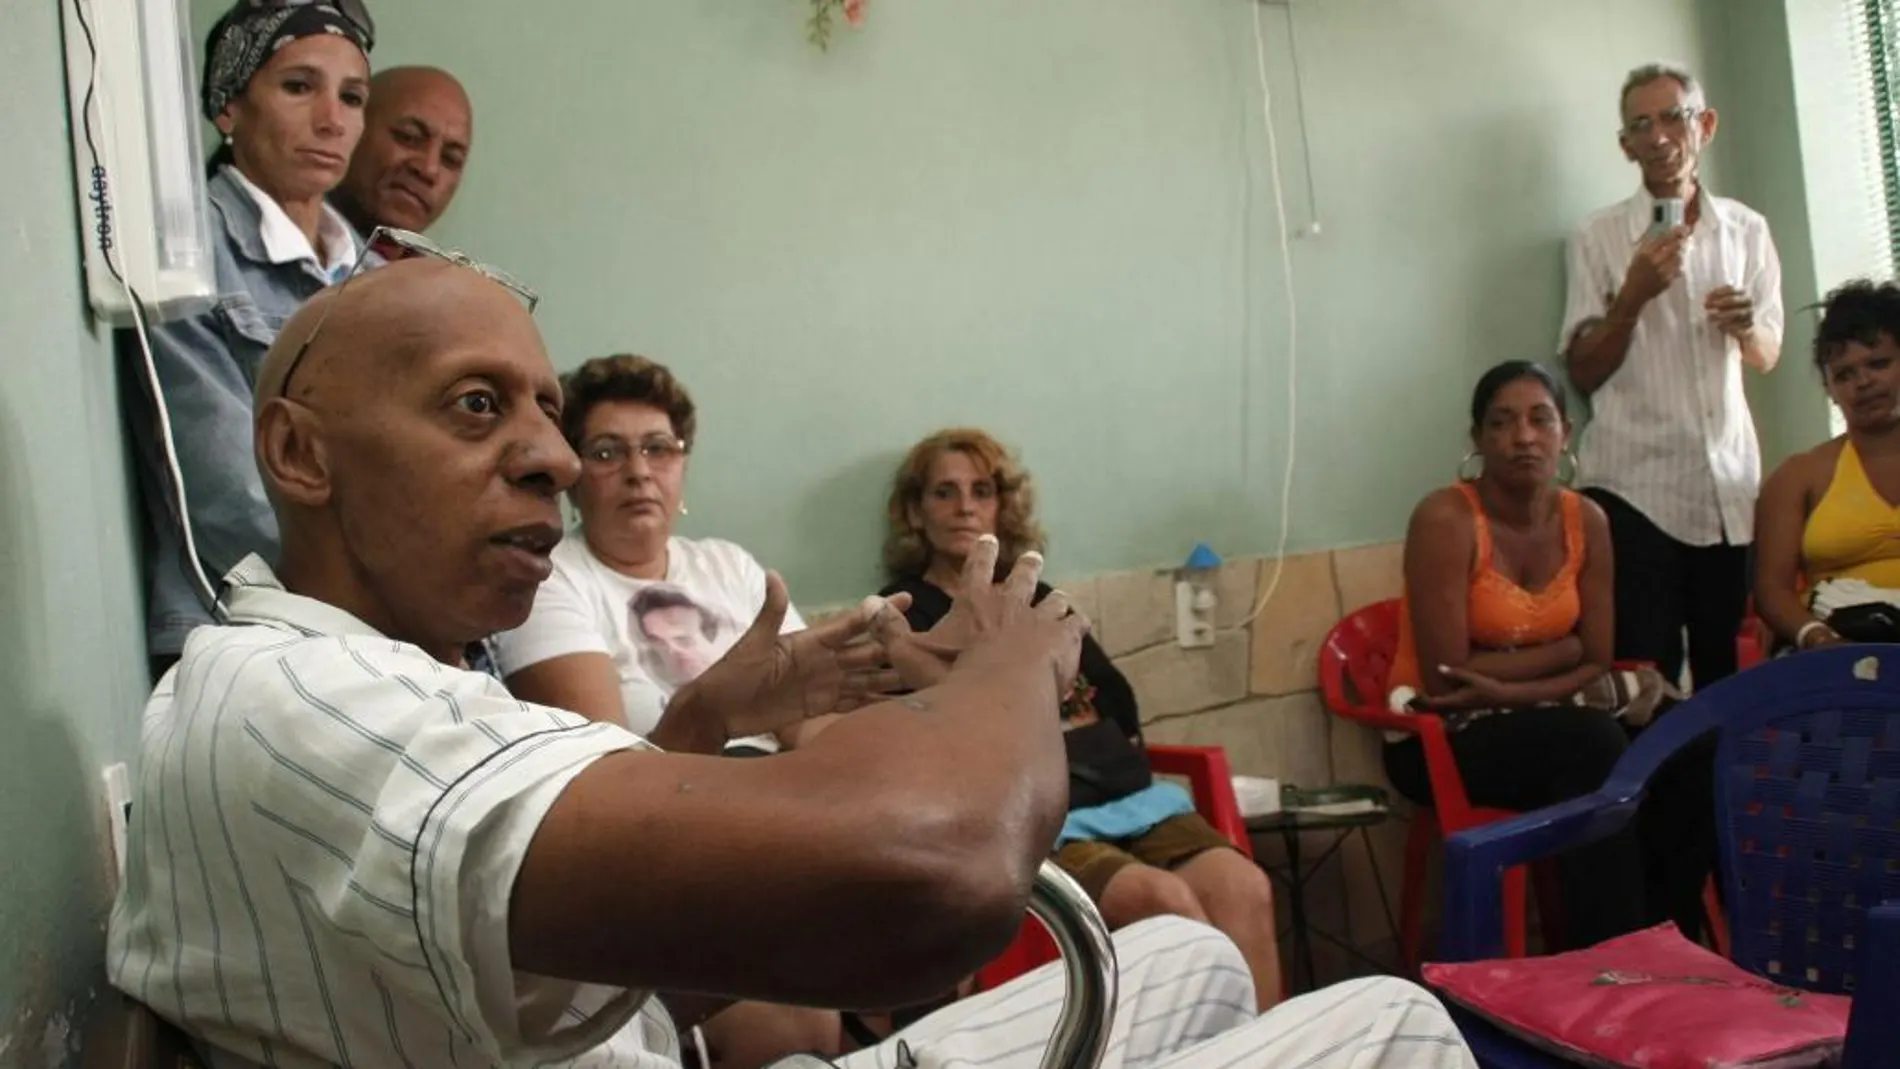 El disidente cubano Guillermo Fariñas durante su huelga de hambre de 2010